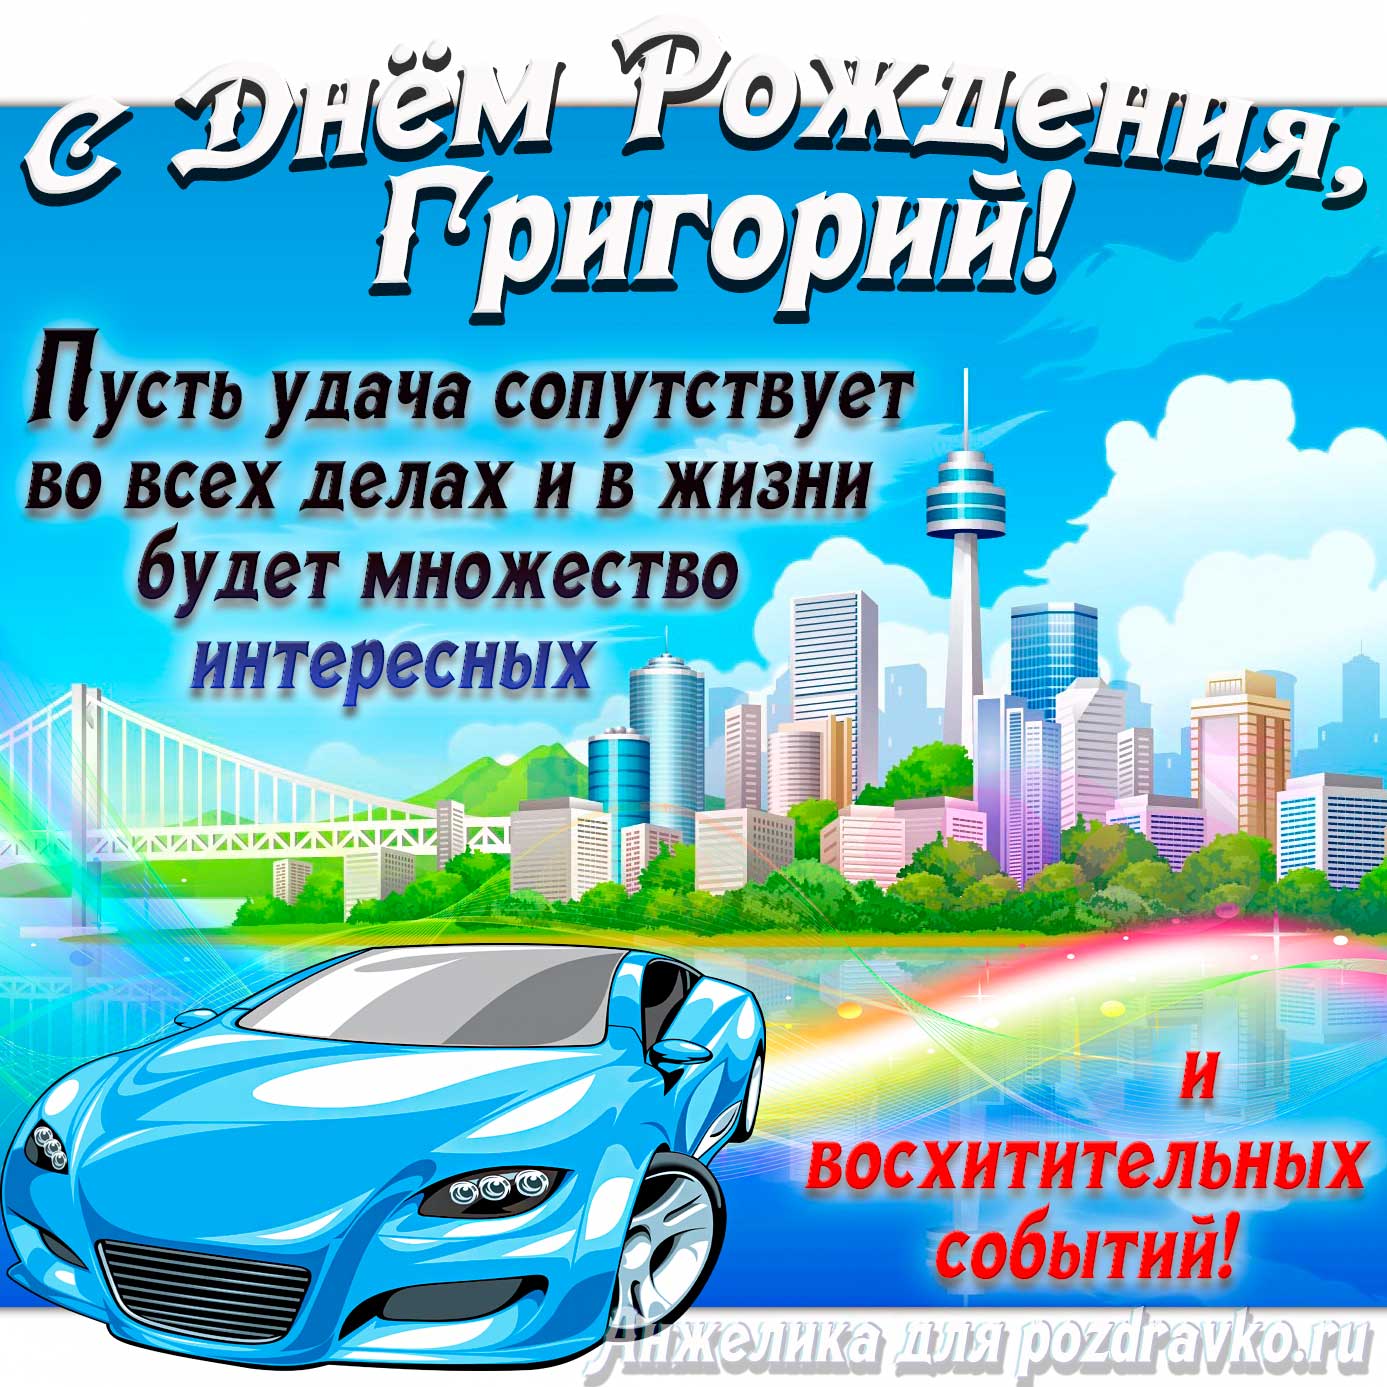 Открытка - с Днём Рождения Григорий с голубой машиной и пожеланием. Скачать бесплатно или отправить картинку.